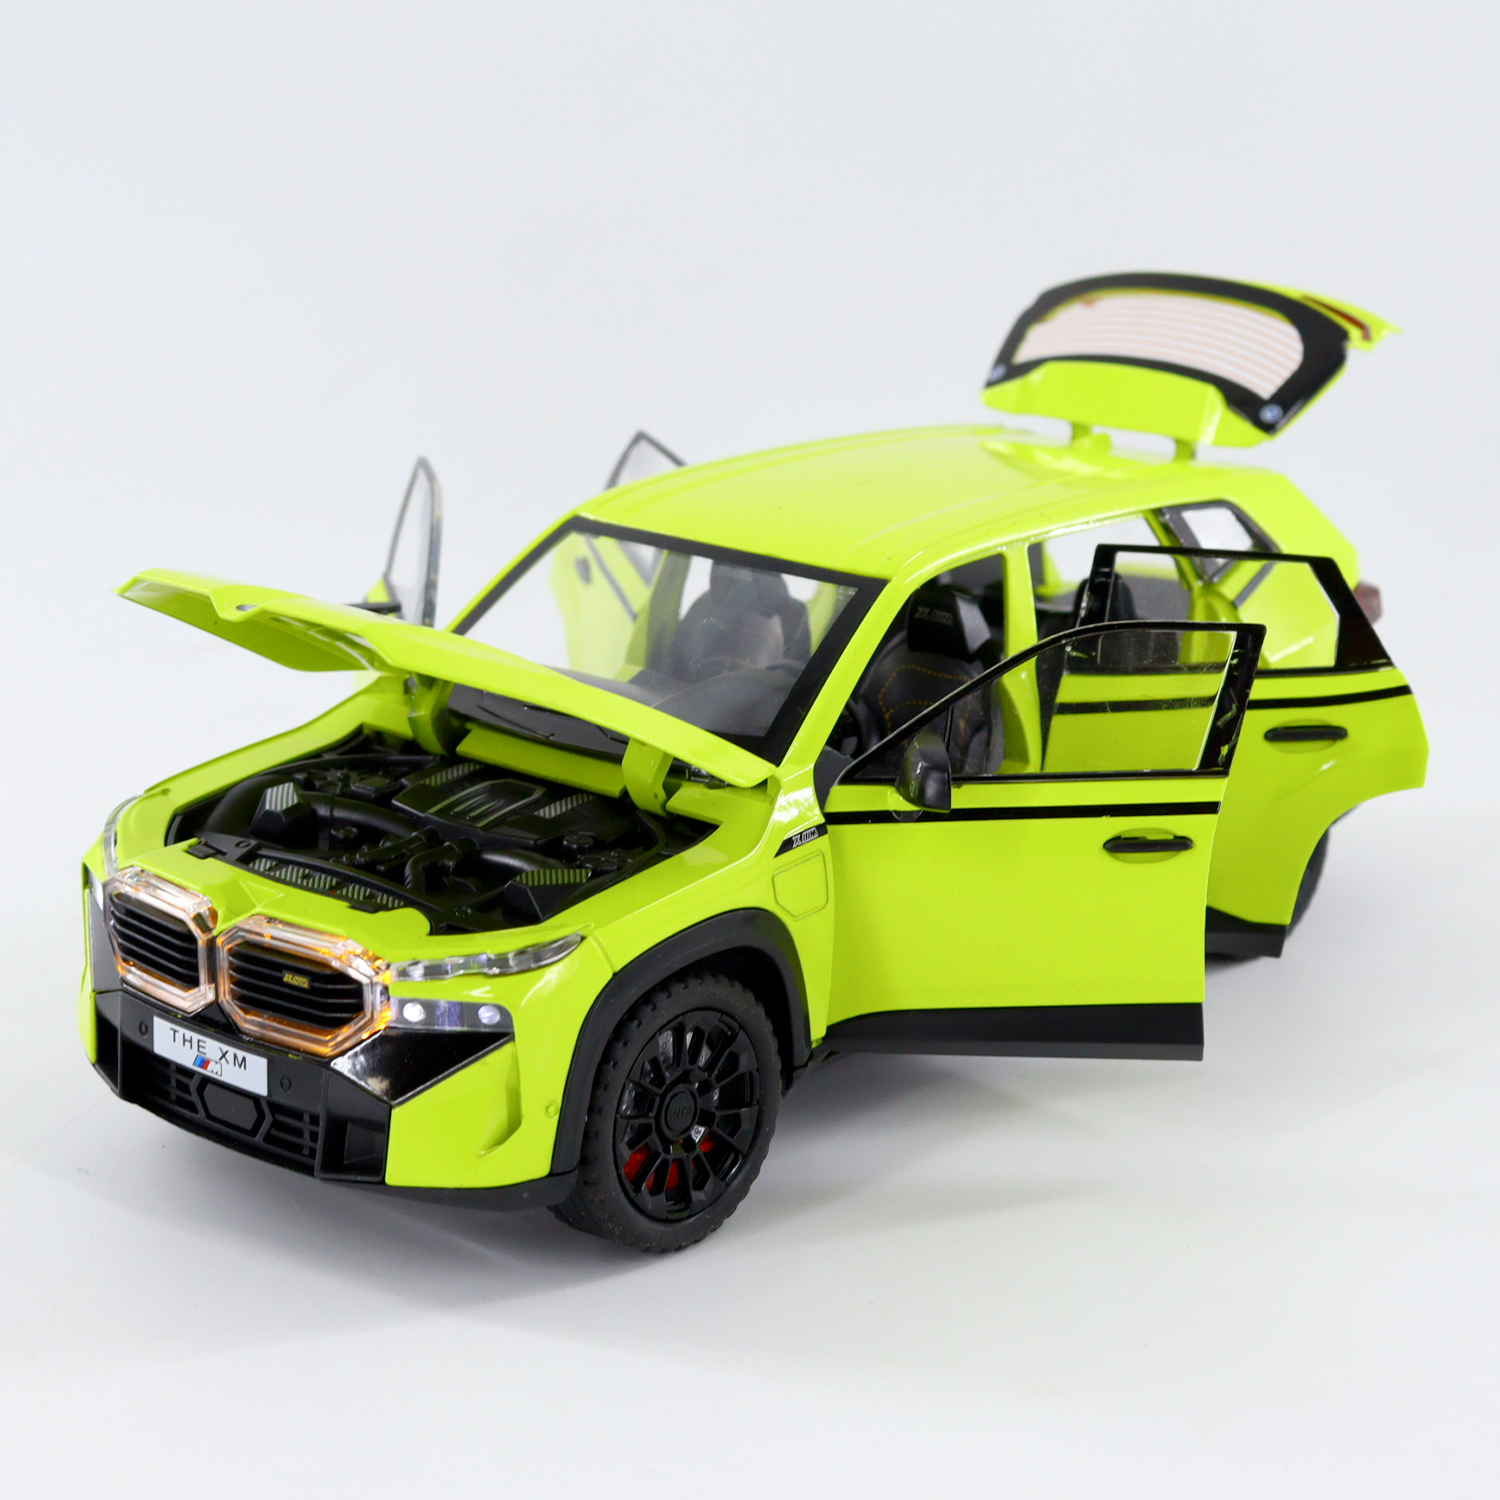 Zinc Alloy Car for XM SUV Alloy Diecasts Metal Model Car